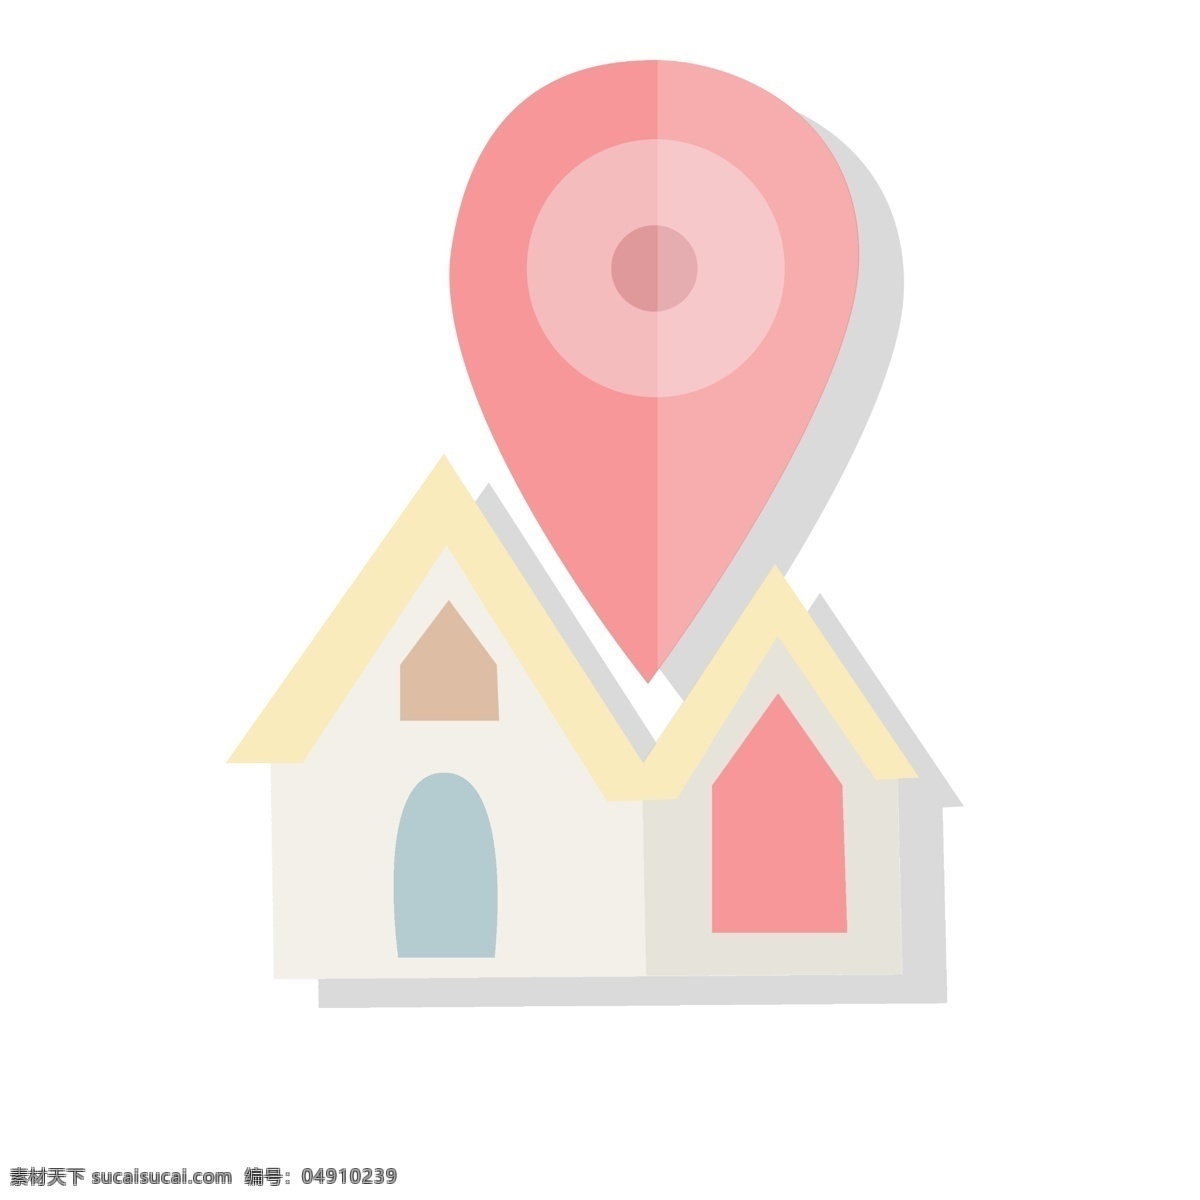 清新 扁平 风格 简历 地址 小 图标 可爱 个性 房子 住房 住址 家庭 地理位置 位置 地图 折纸